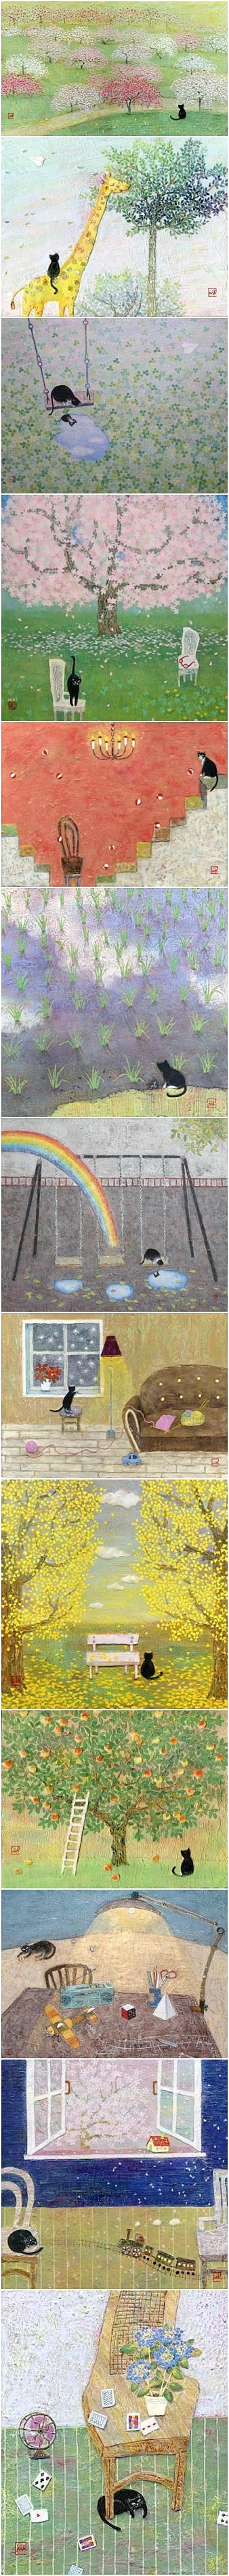 野地美树子の治愈系小画『一只猫的散步』 